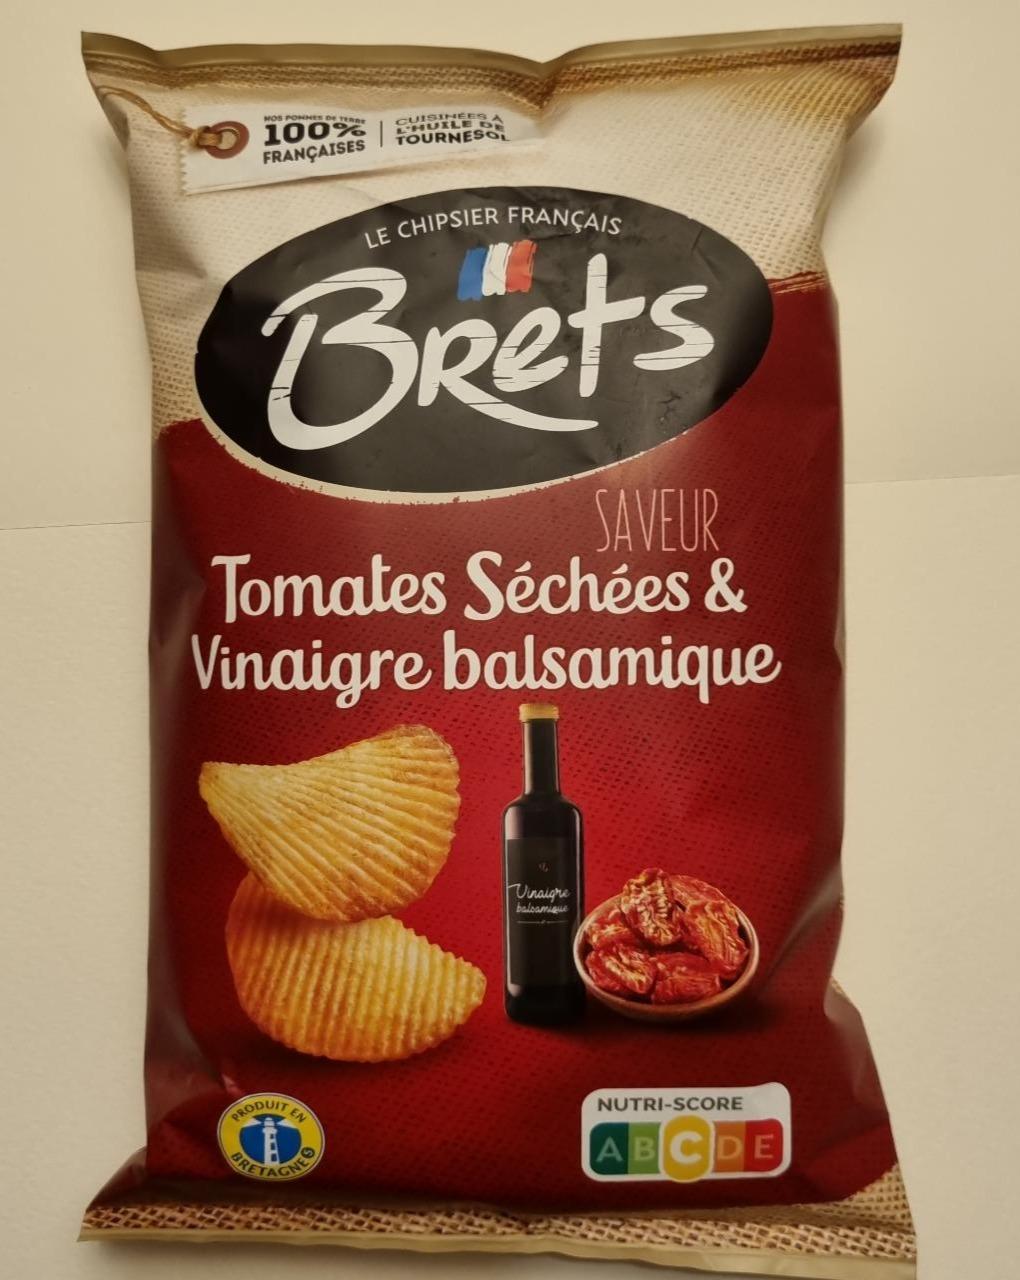 Fotografie - Le chipsier Français Saveur Tomates Séchées & Vinaigre balsamique Brets